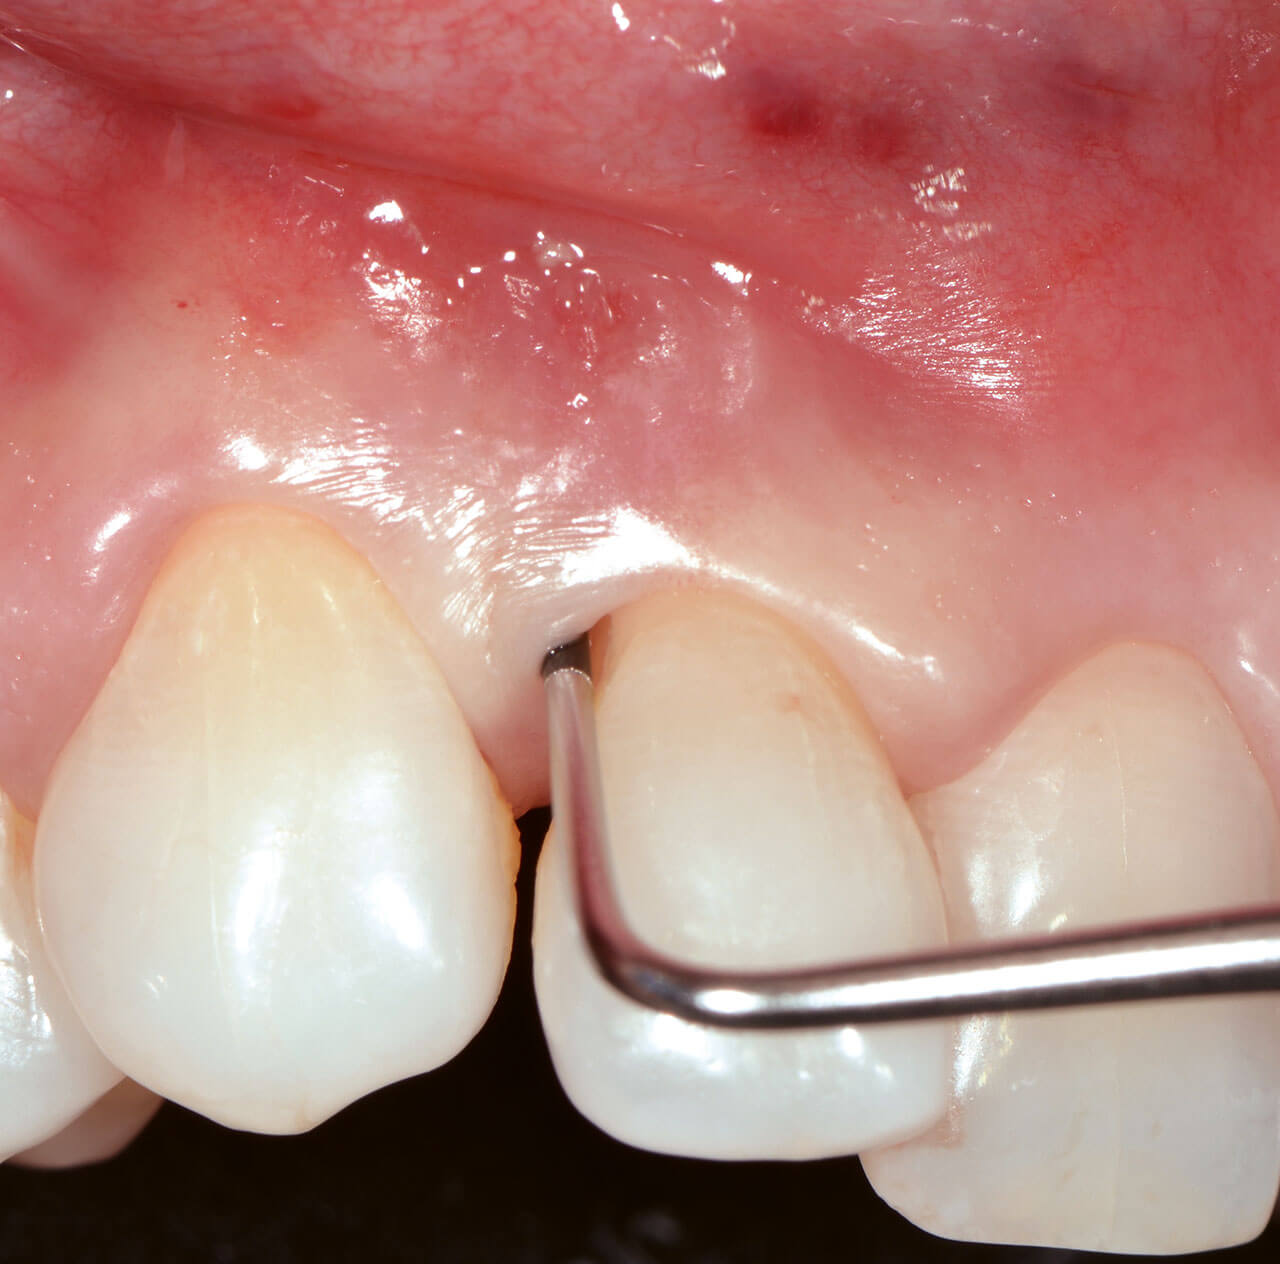 Abb. 3  Die präoperative Situation zeigt eine stark erhöhte Sondierungstiefe am Zahn 12.